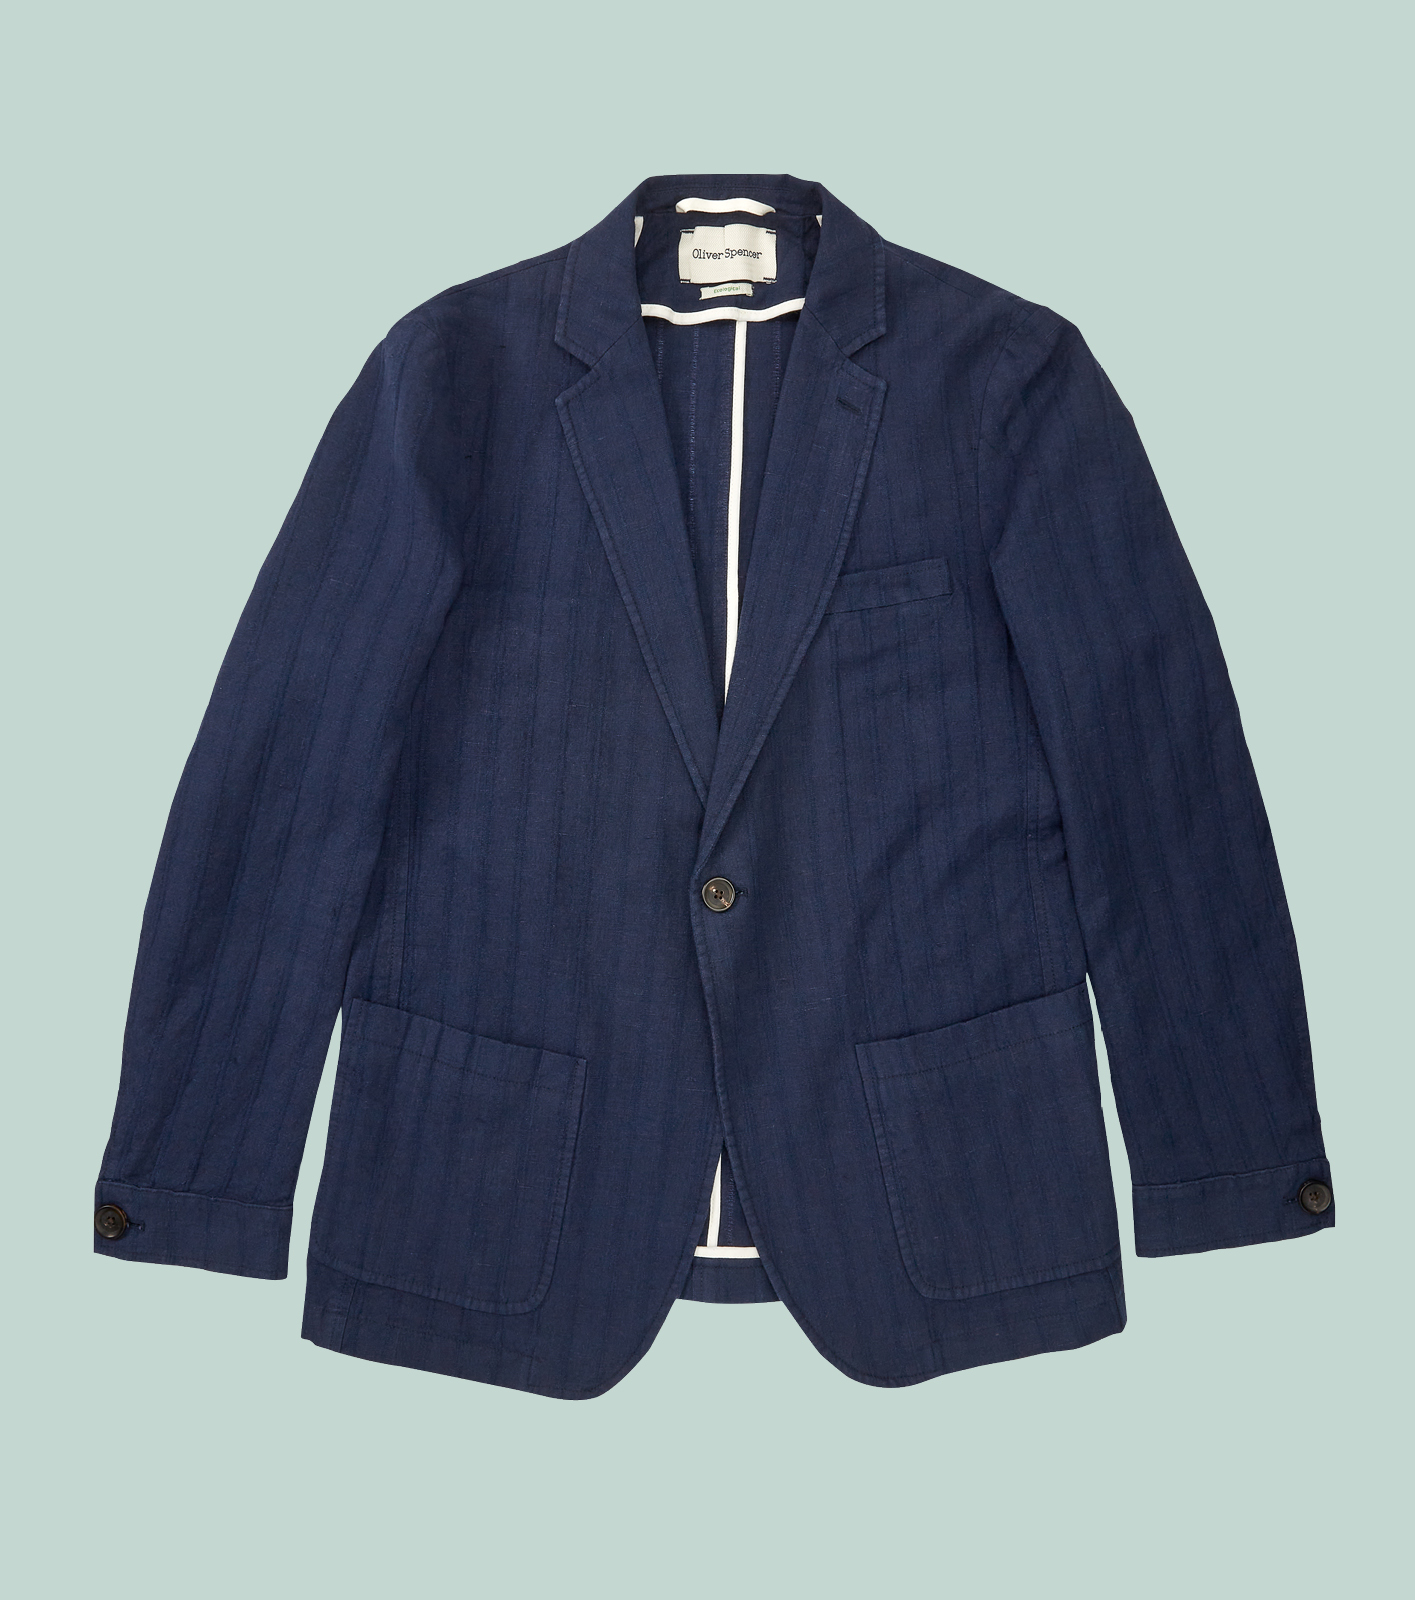 Oliver Spencer Fairway jacket, £368